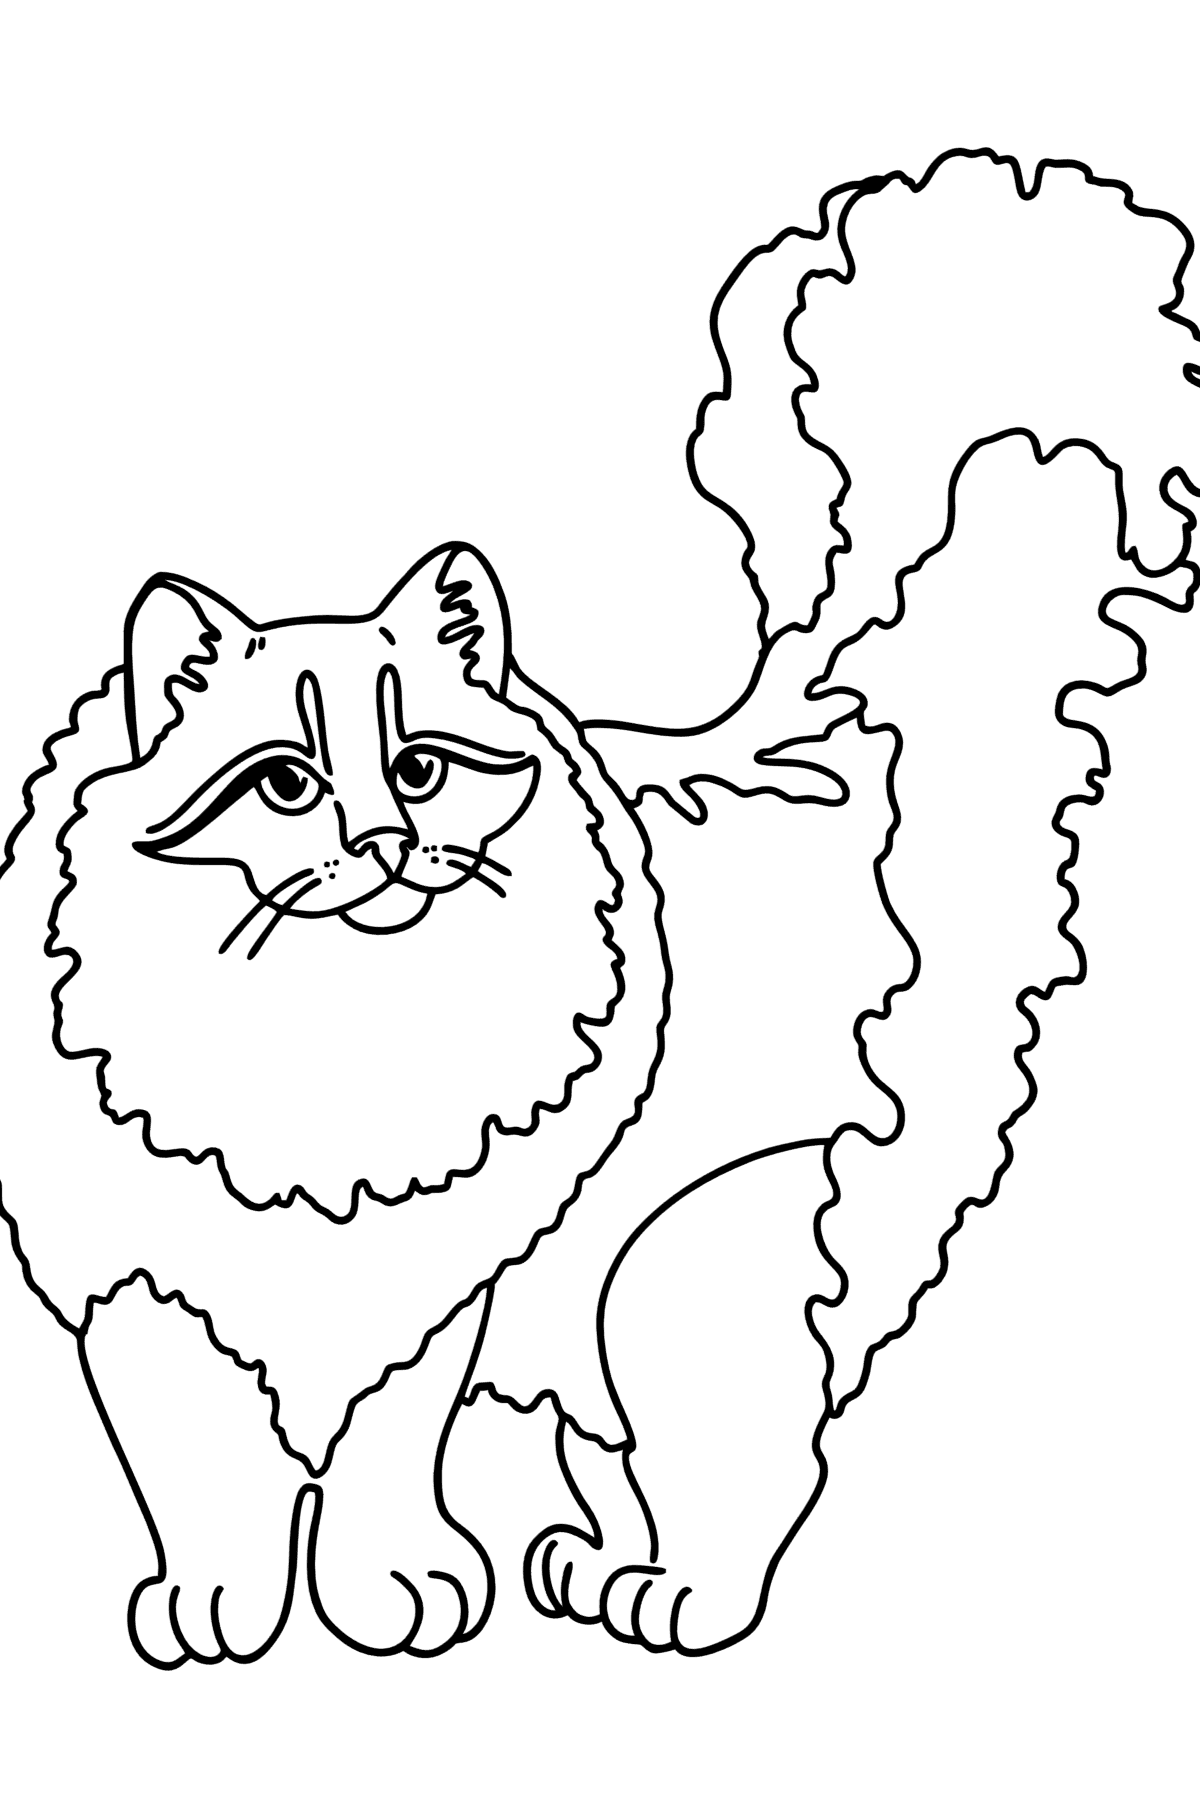 Desen de colorat pisica siberiana - Desene de colorat pentru copii